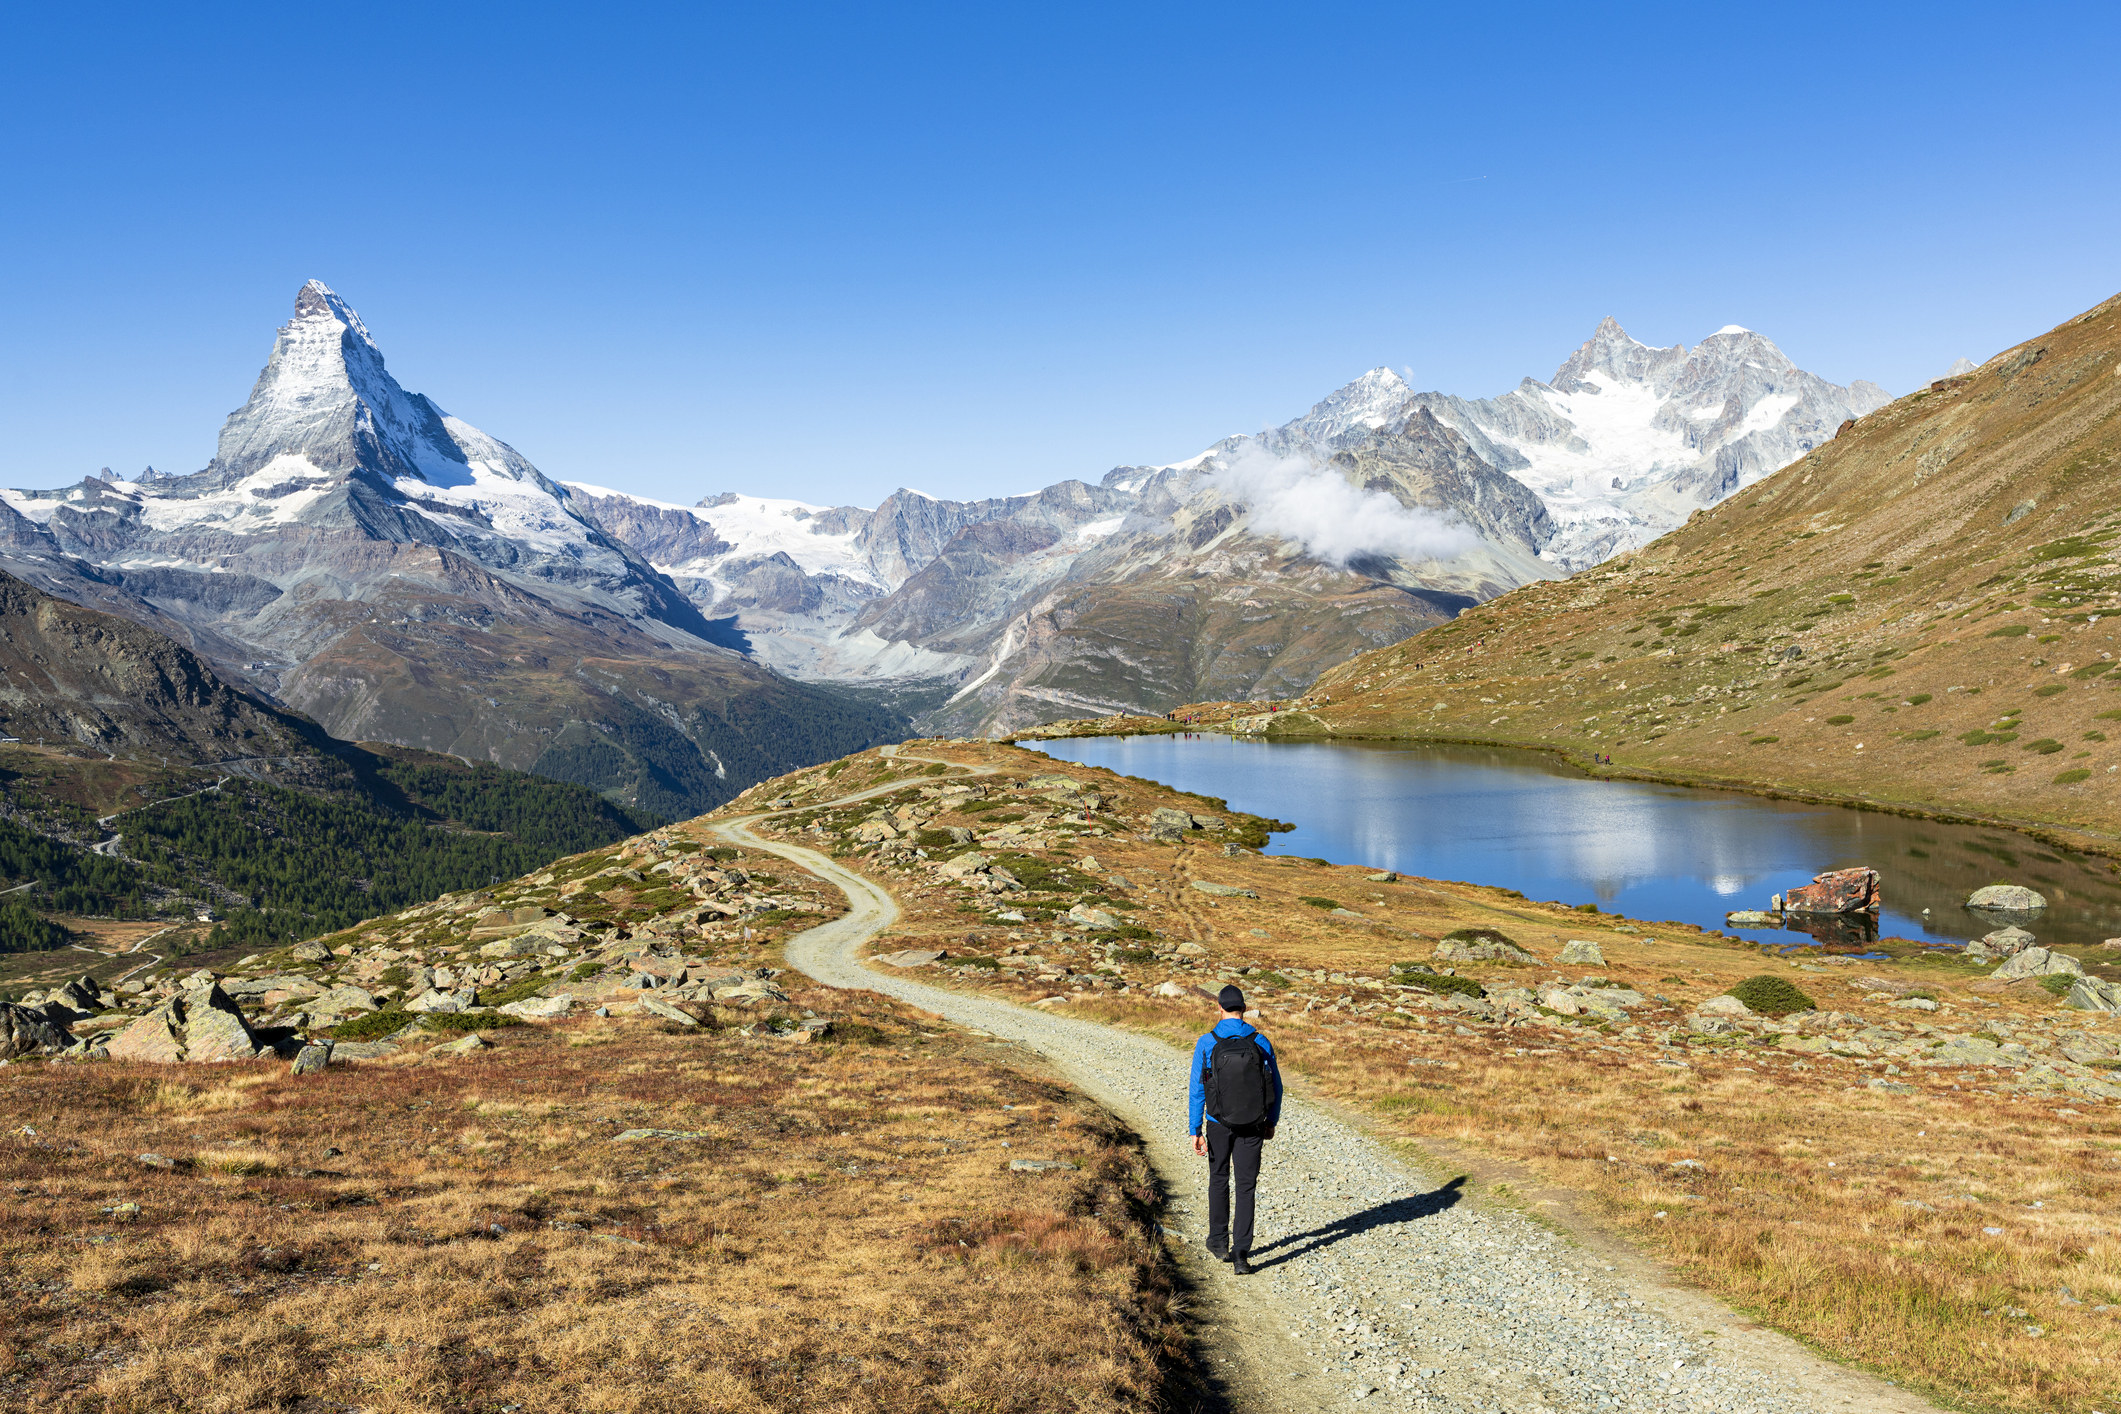 A hiker admiring Matterhorn from path.